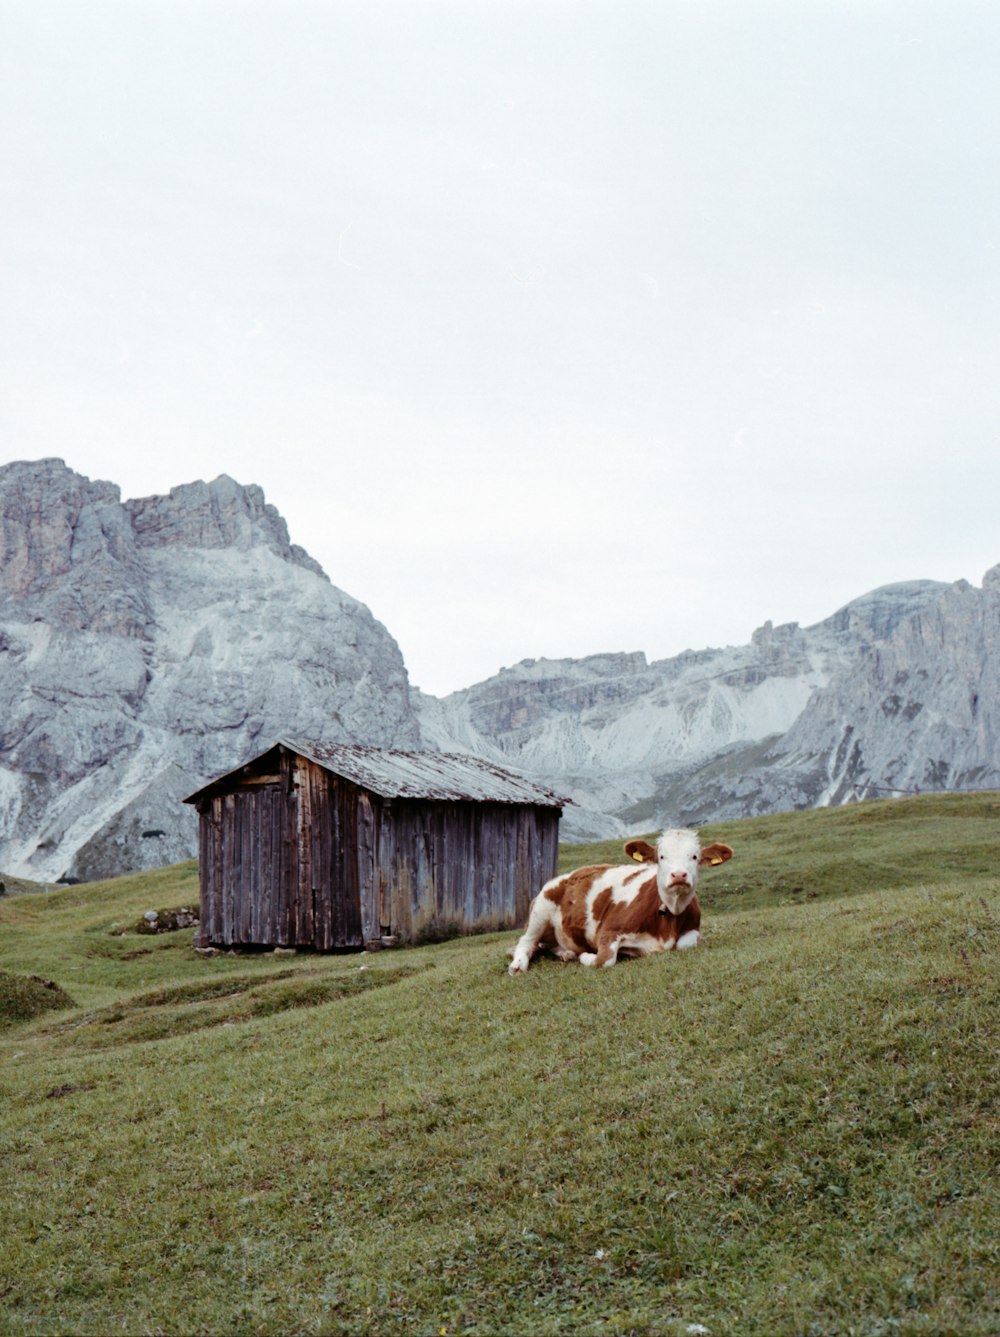 mucca marrone e bianca sul campo di erba verde vicino alla casa di legno marrone durante il giorno